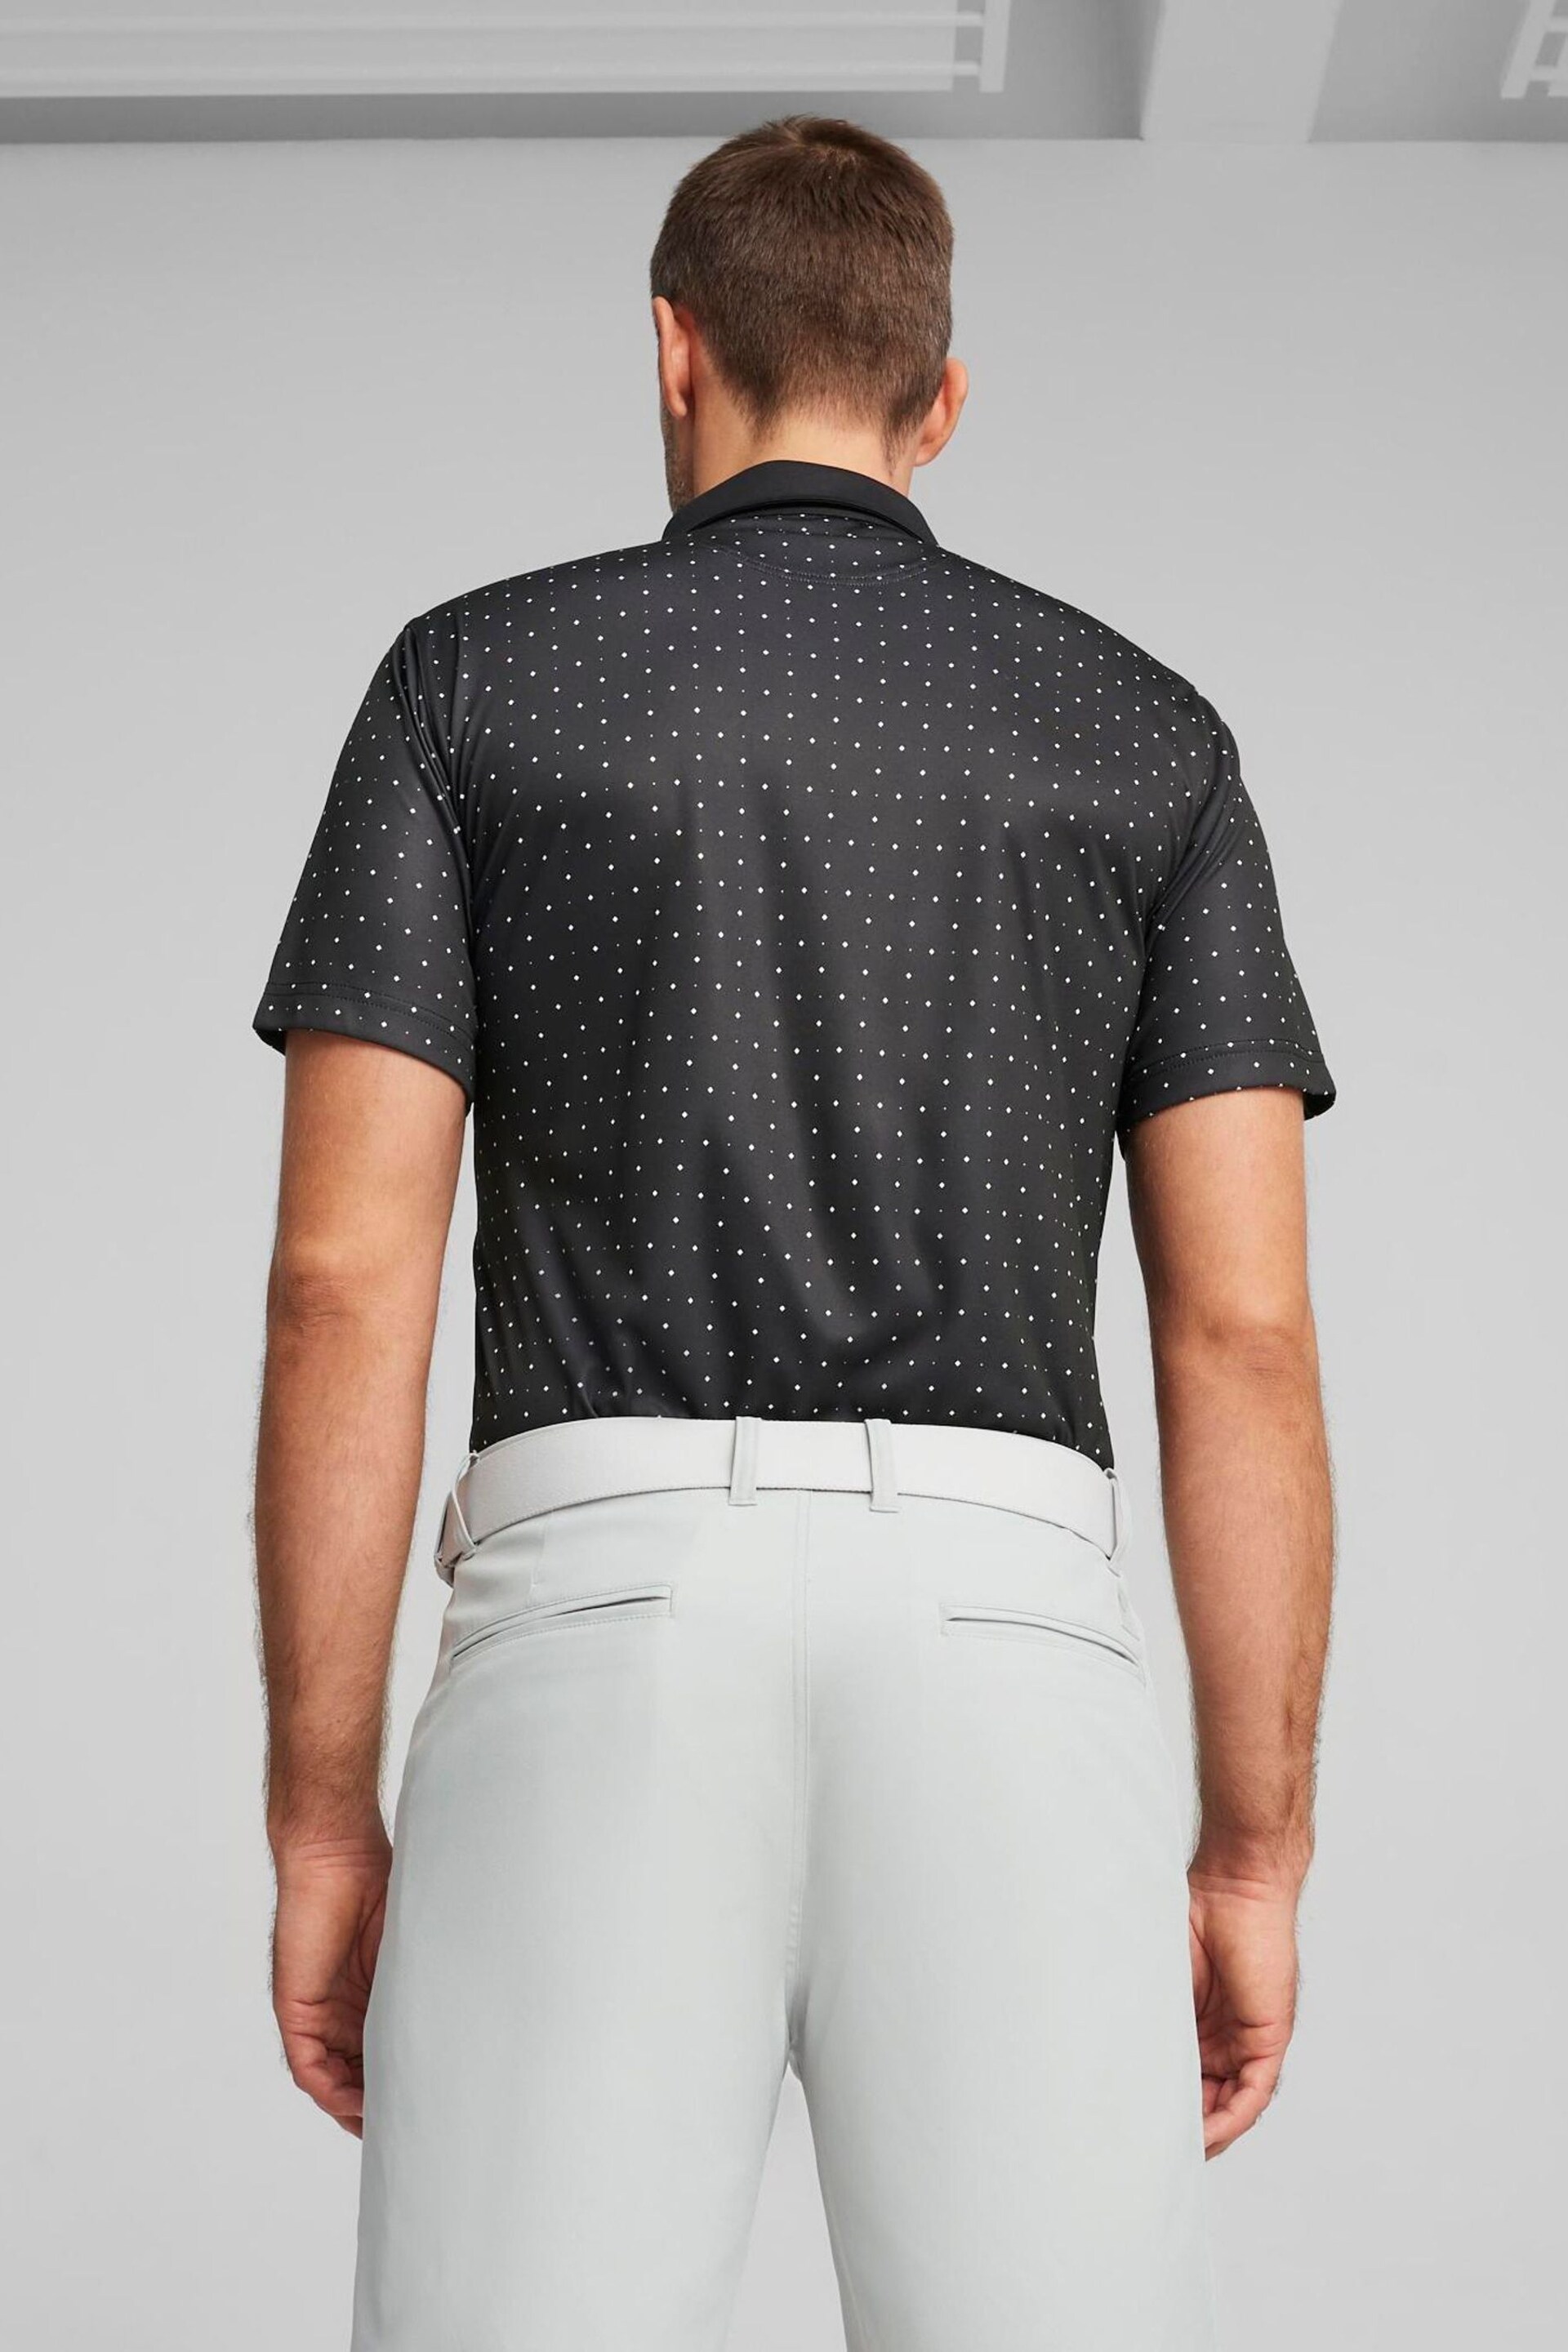 Puma Black Pure Geo Golf Mens Polo Shirt - Image 2 of 5